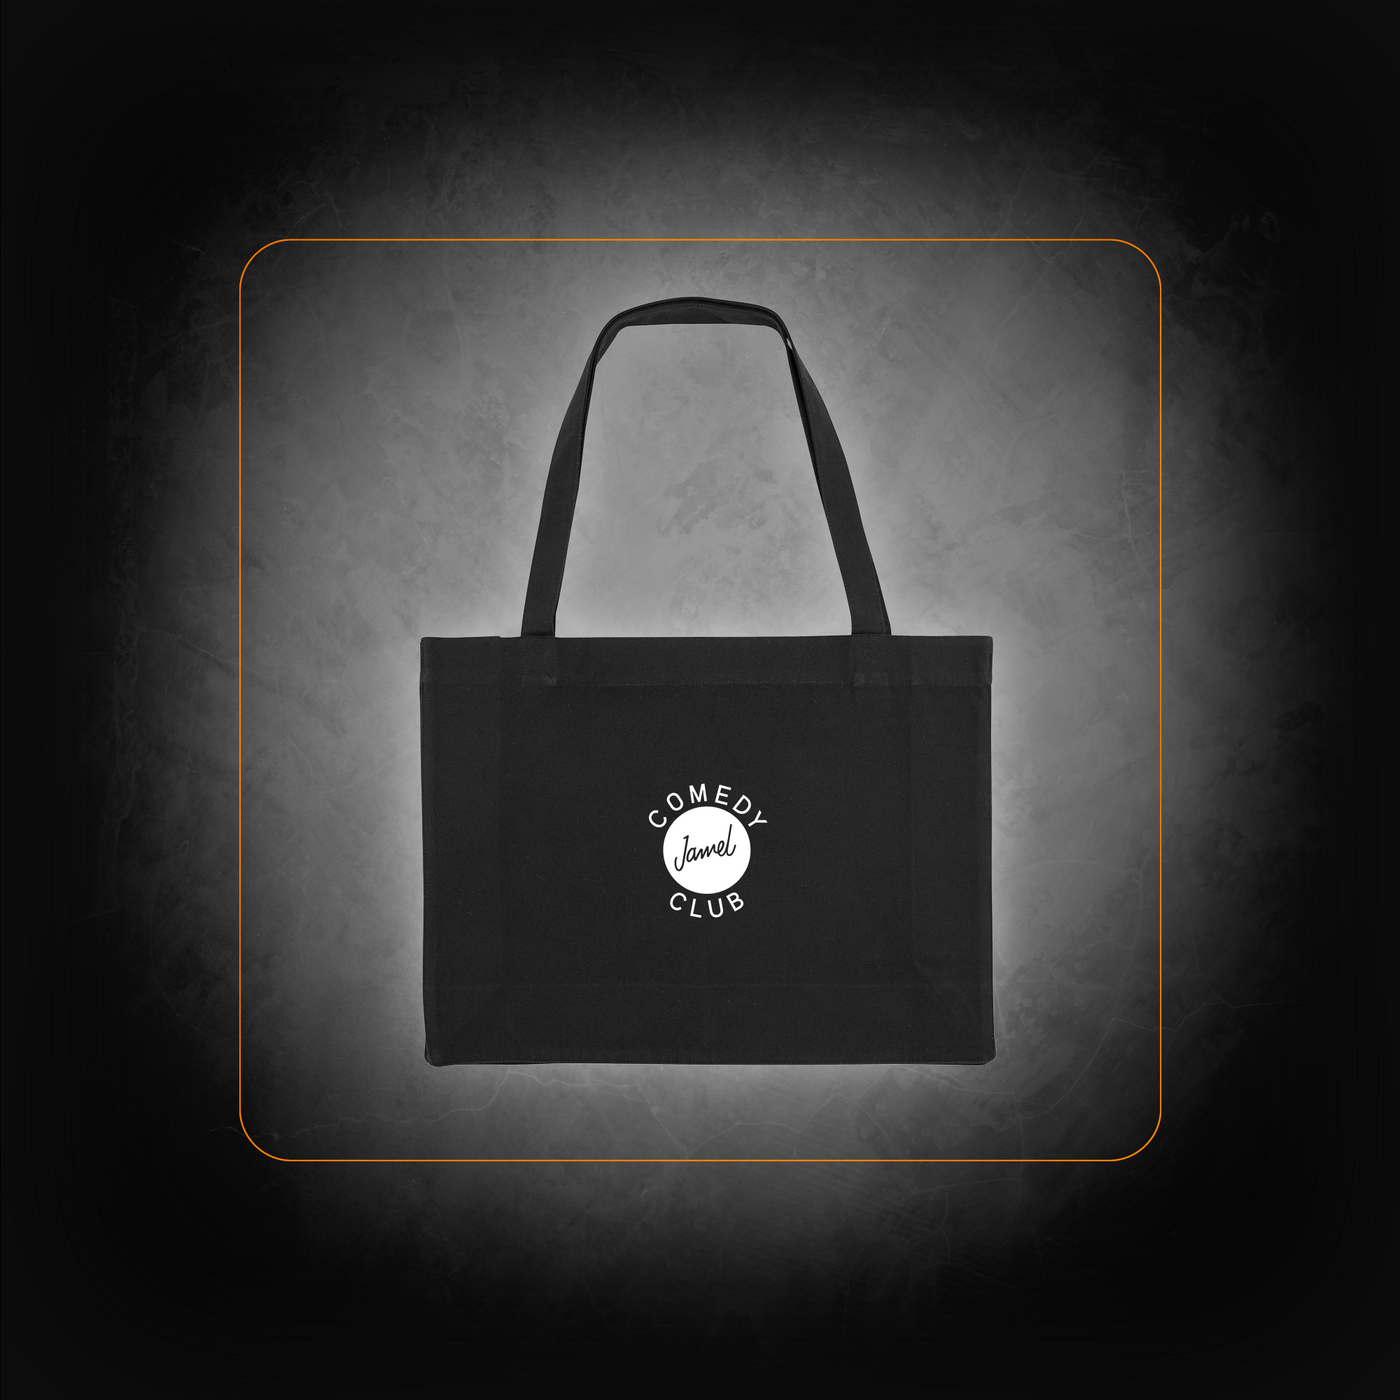 Jamel Comedy Club shopping bag logo face